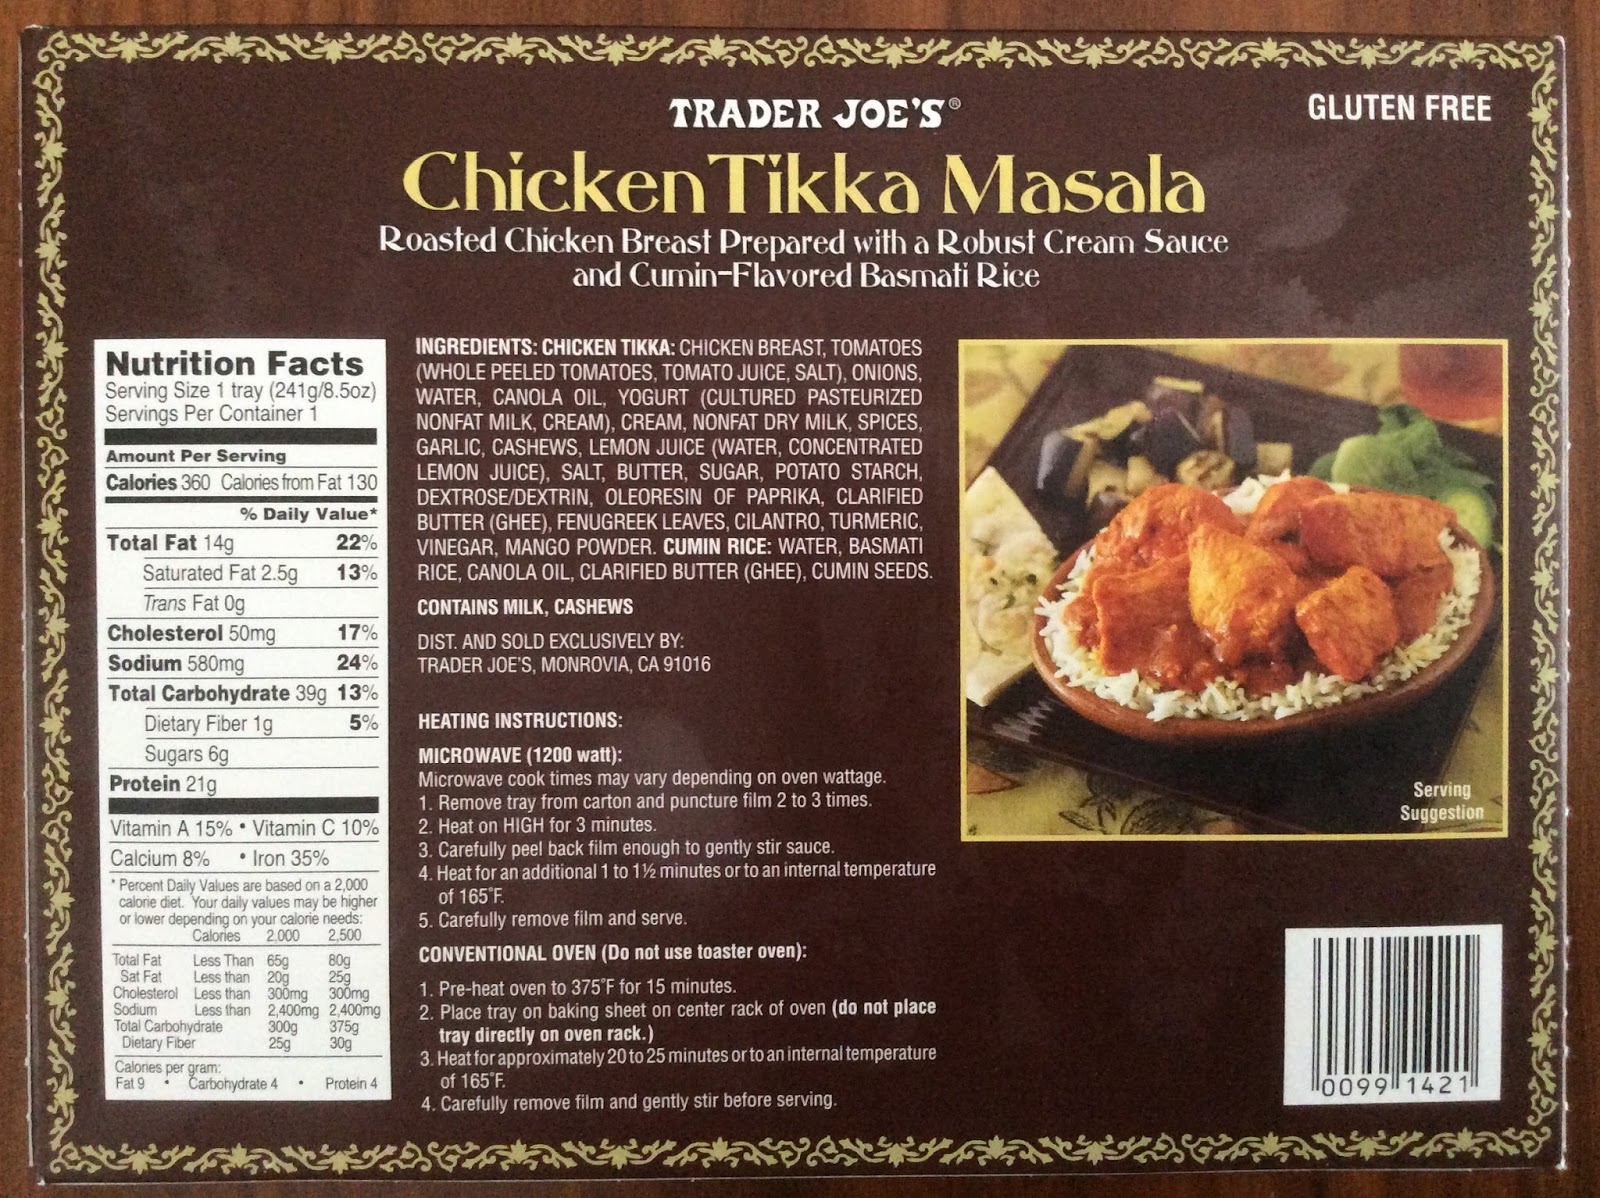 Trader Joe's Chicken Tikka Masala - Frozen Meal Friday Part 2.